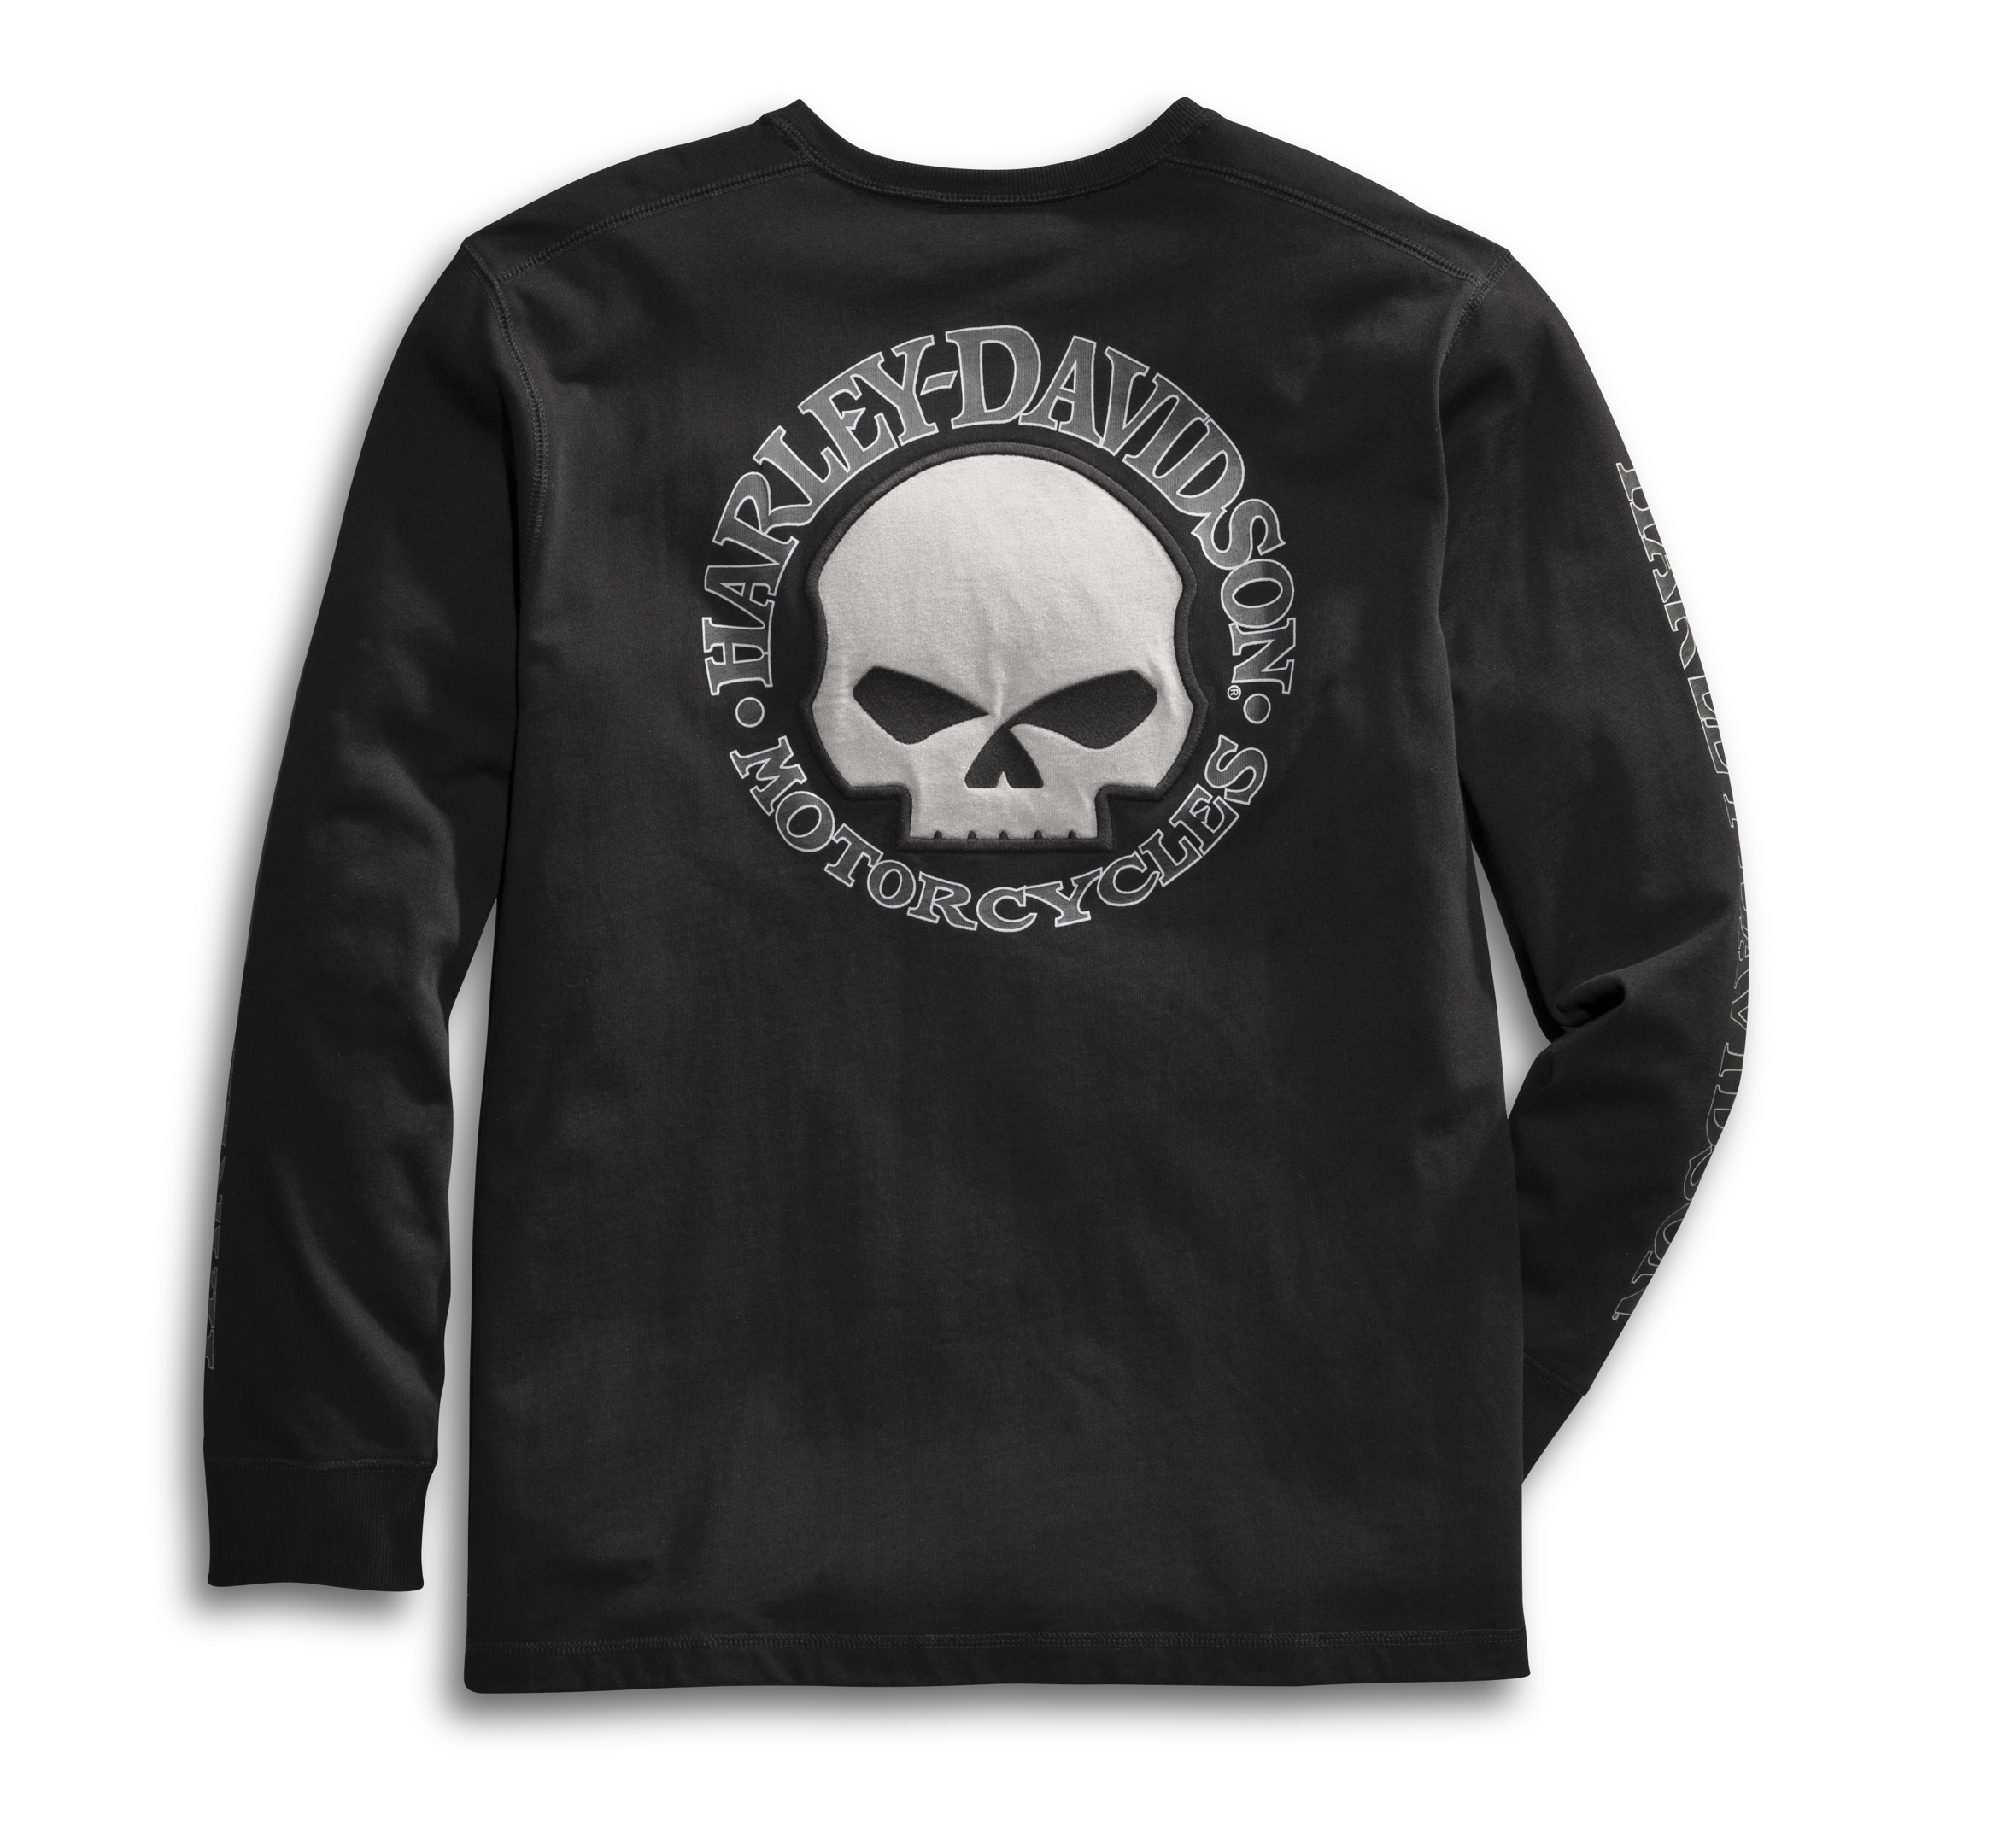 Camp Leatherneck Harley-Davidson Military Men's Black Skull Graphic T-Shirt